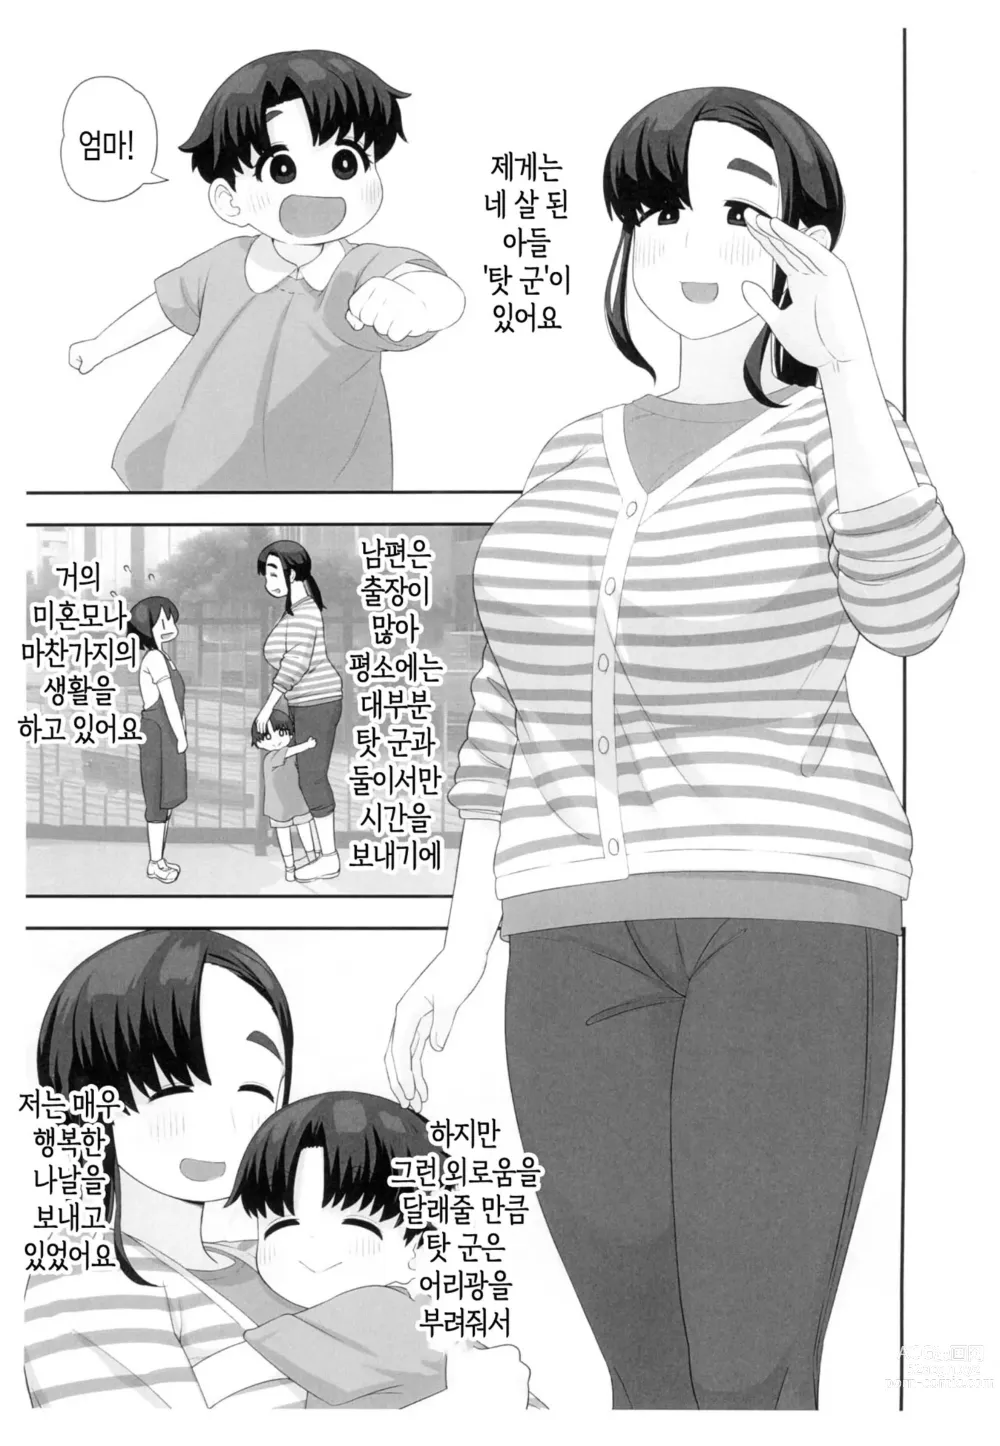 Page 2 of doujinshi 체험수기류 소설 에로동인 오네쇼타 동인작가 엄마의 비밀